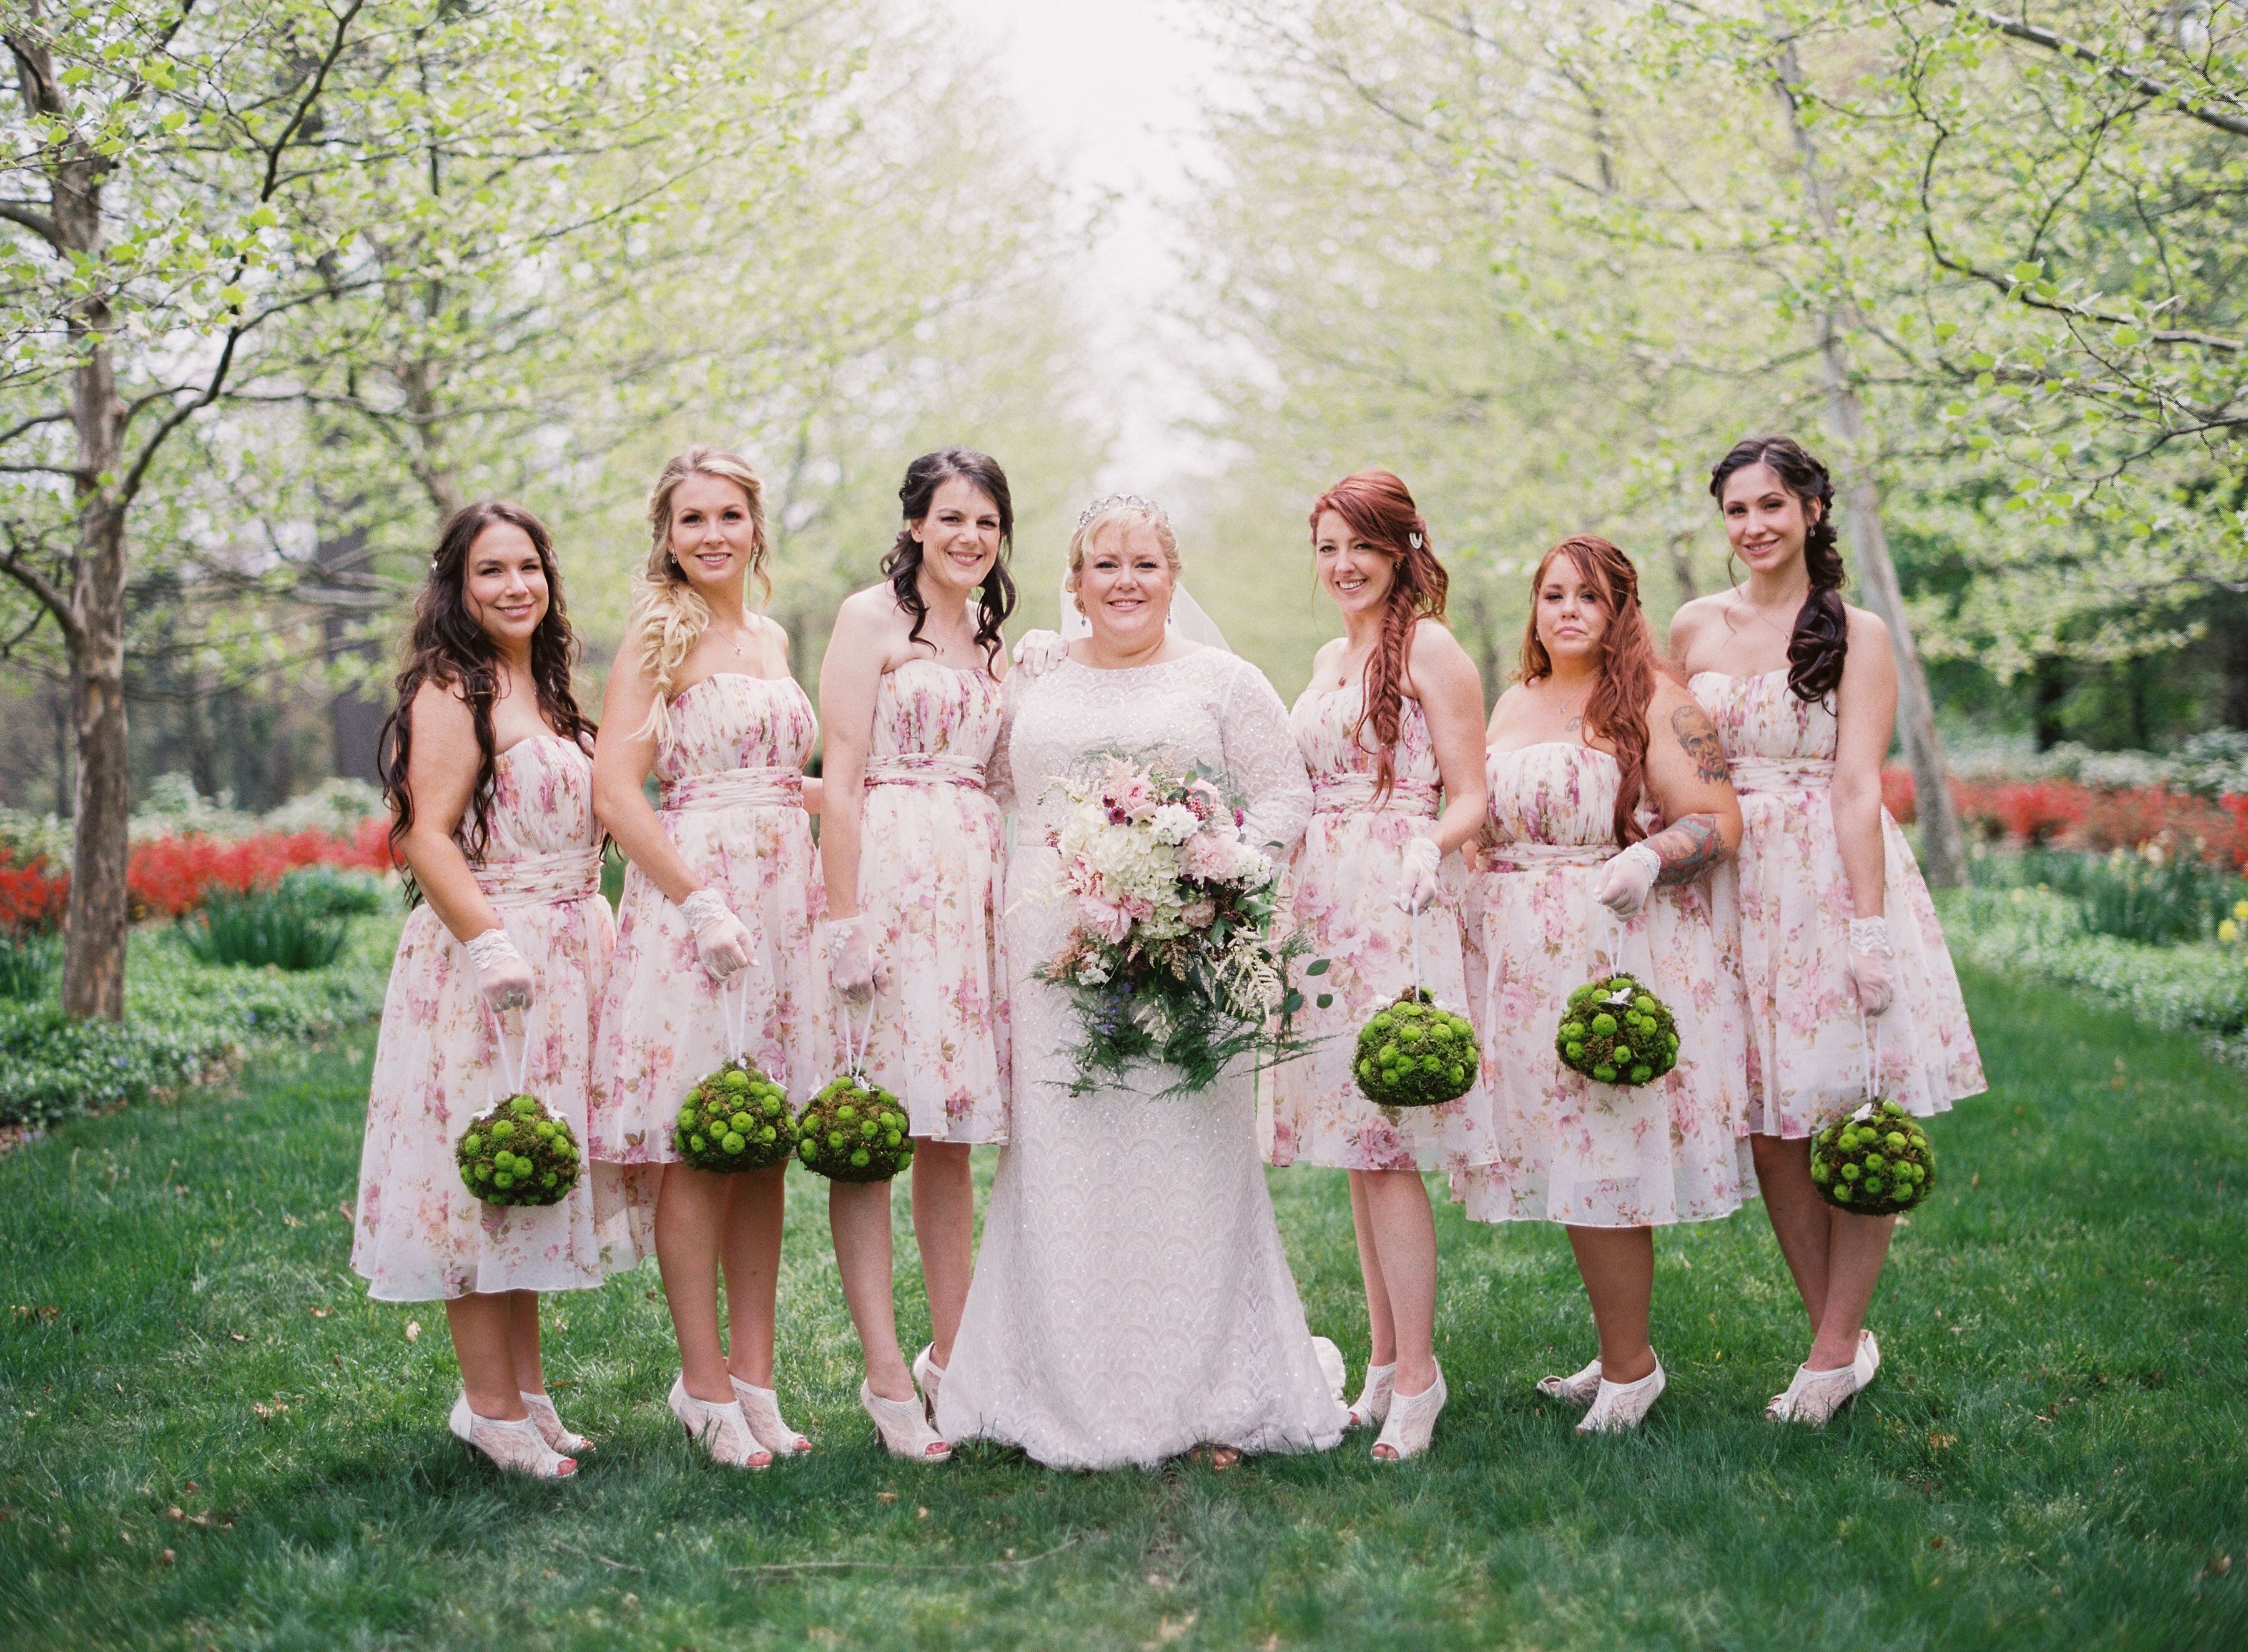 Pink Bridesmaids Dresses And Unique Bridesmaids Bouquets